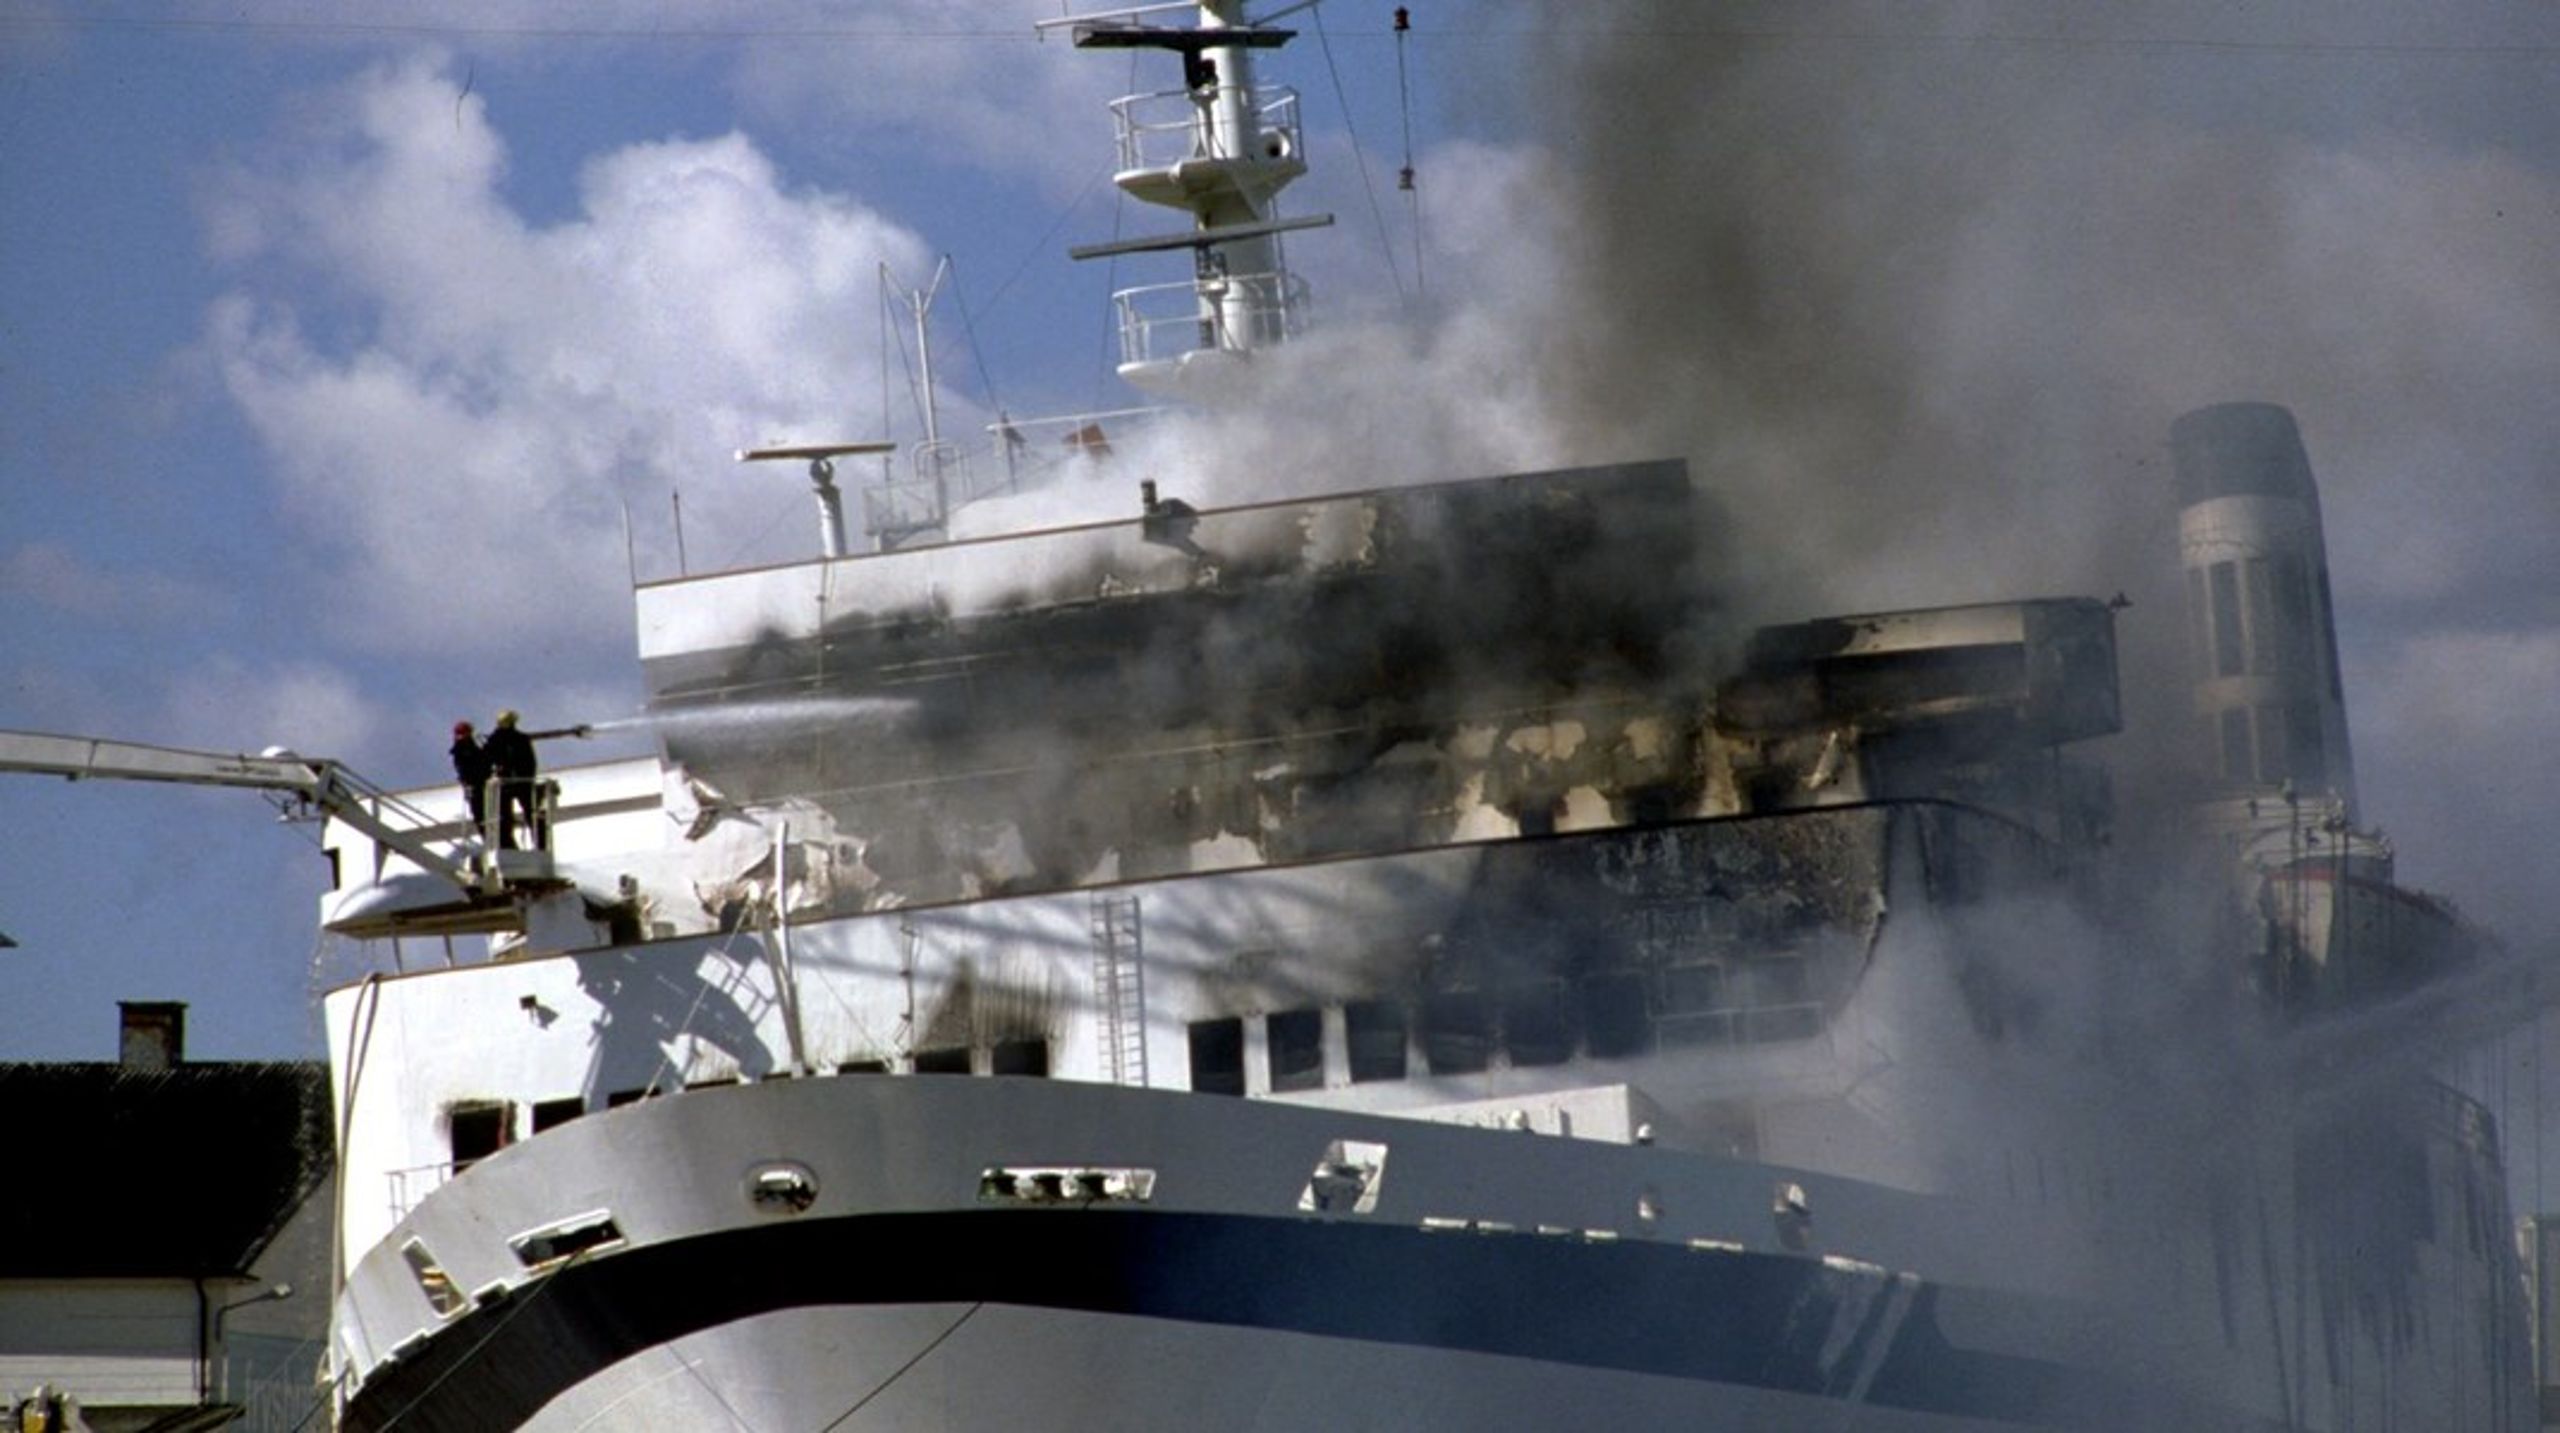 Natten til den 7. april 1990 blev færgen Scandinavian Star ramt af flere brande, der kostede 159 mennesker livet.